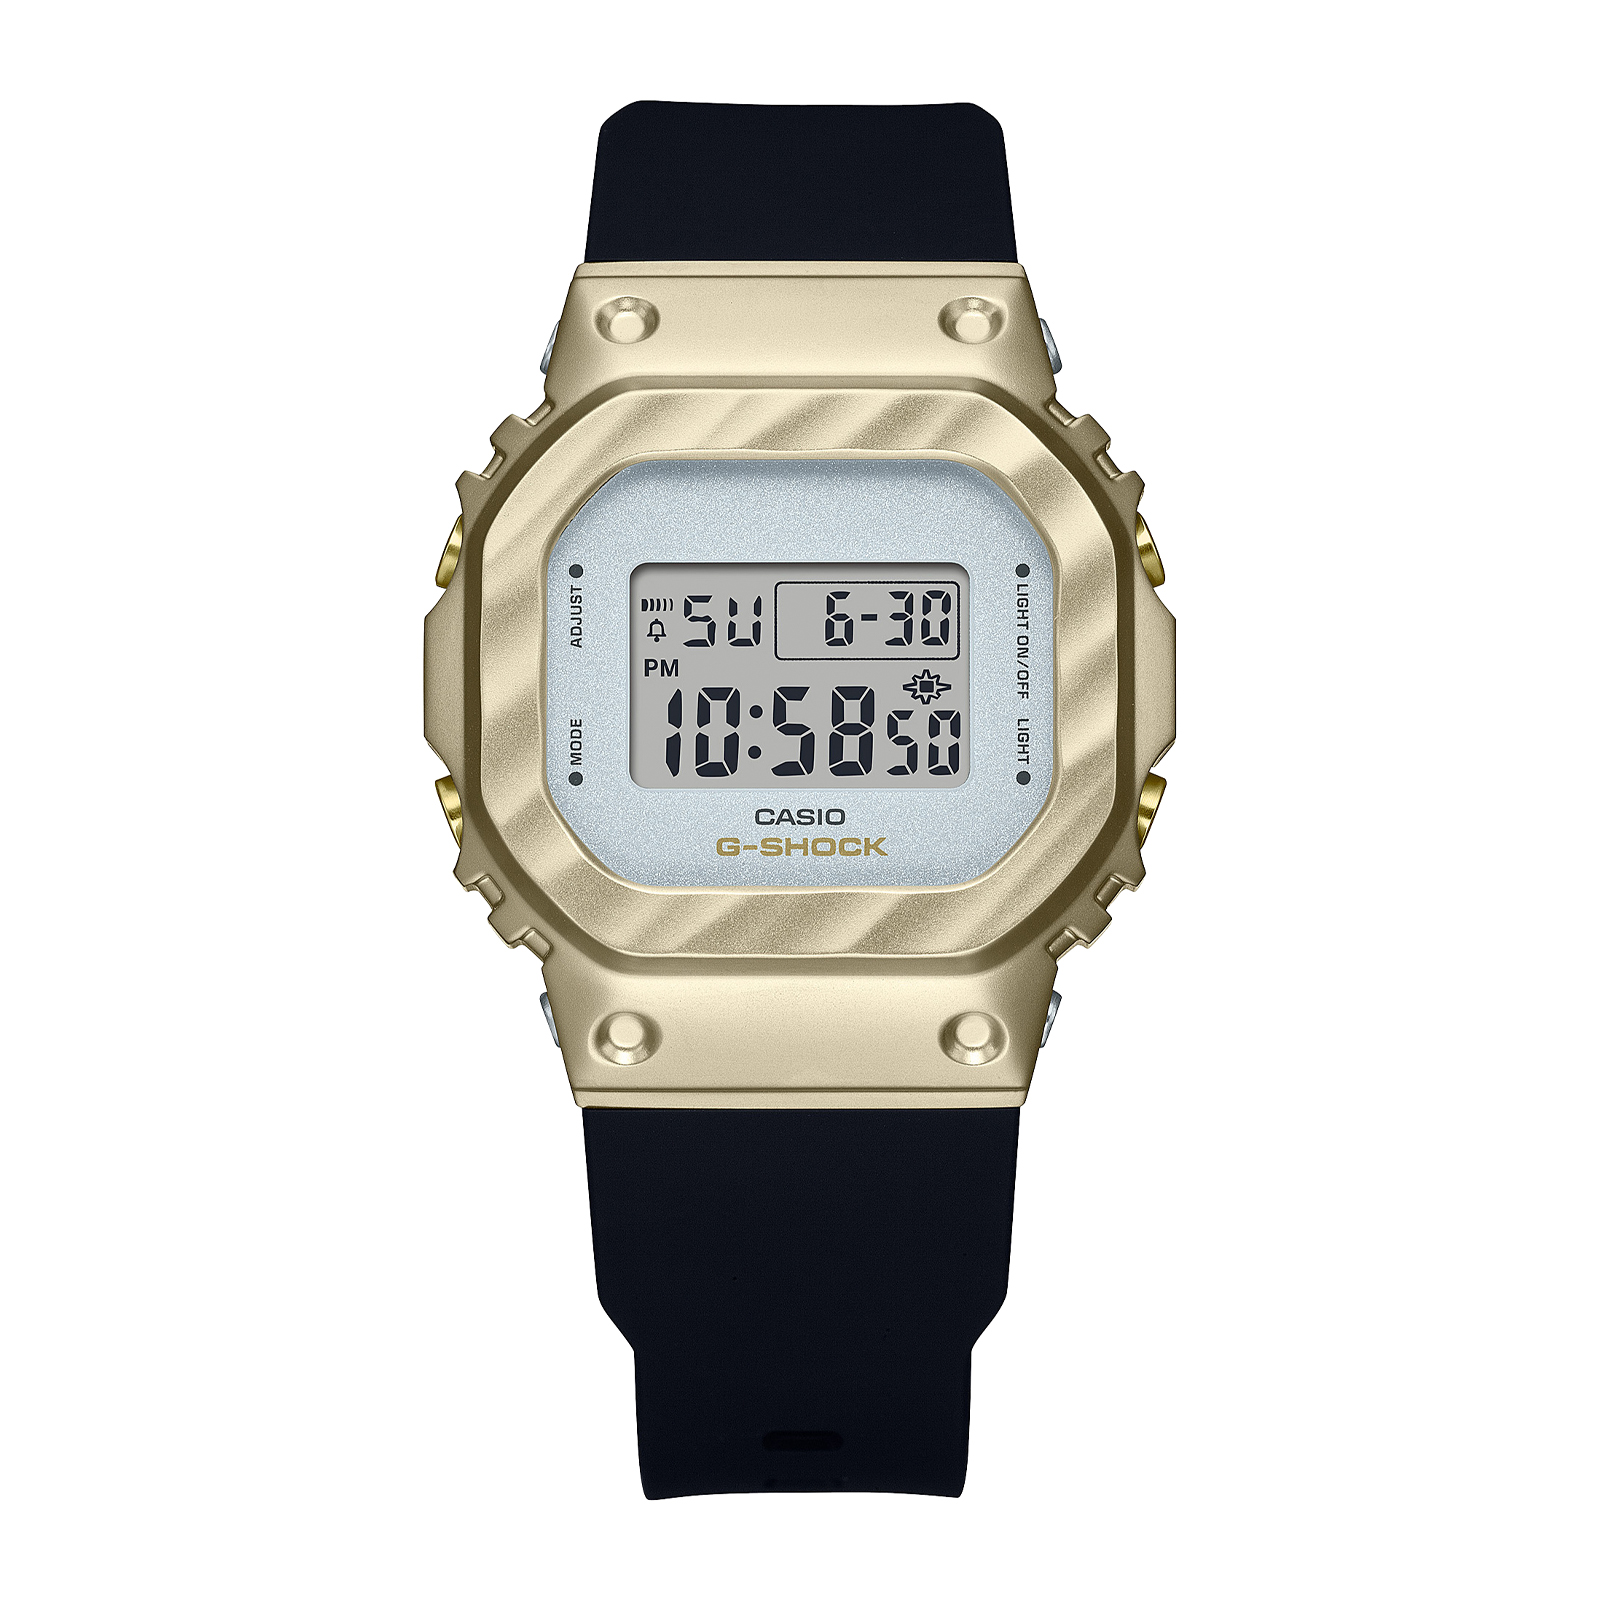 Reloj G-SHOCK GM-S5600BC-1DR Resina/Acero Mujer Oro Rosa